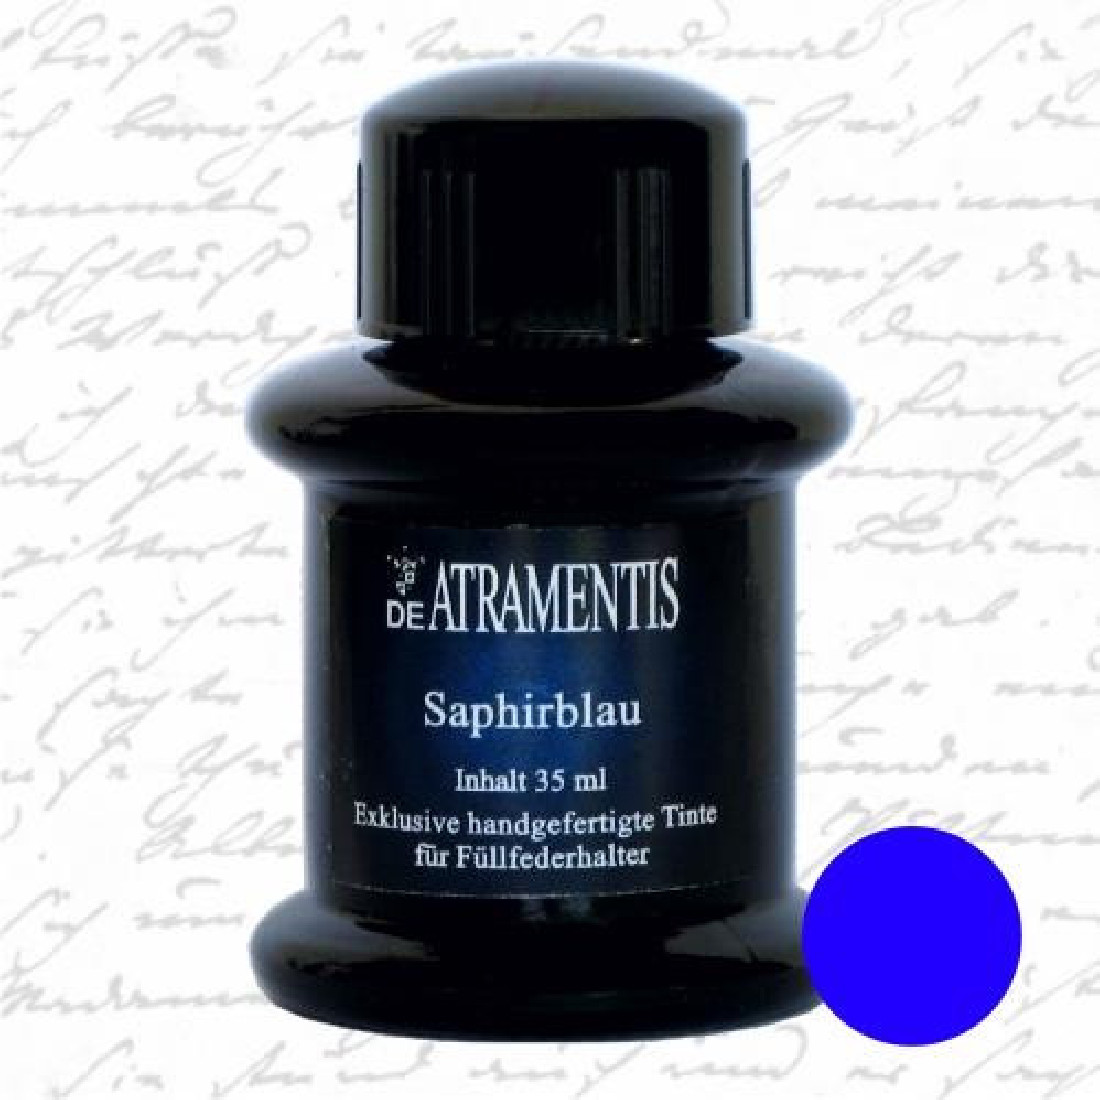 De Atramentis sapphire blue 45ml fountain pen standard ink